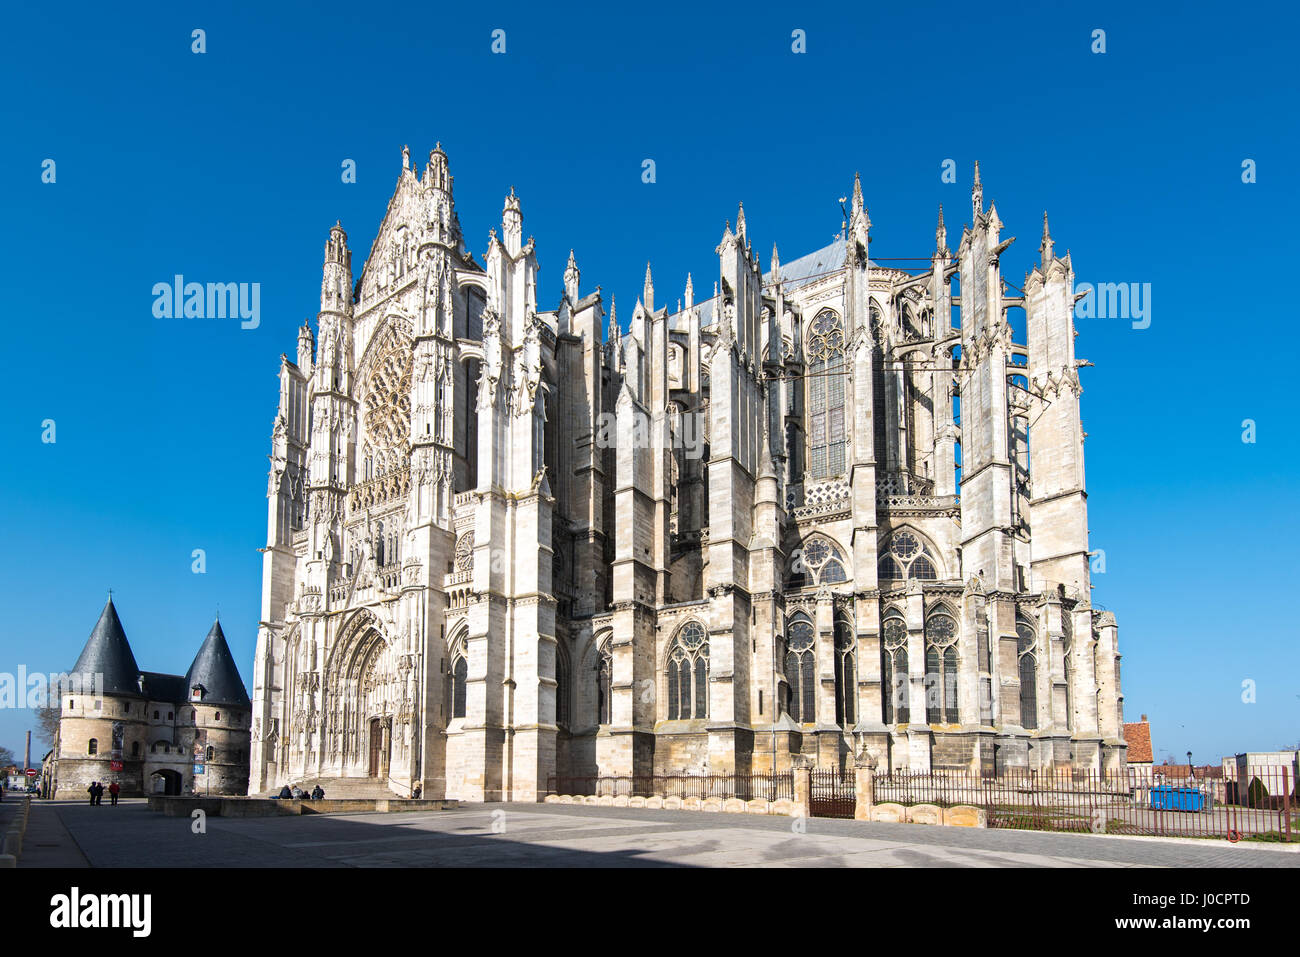 La cathédrale de Beauvais et la maison de l'évêque, Beauvais, France. Banque D'Images